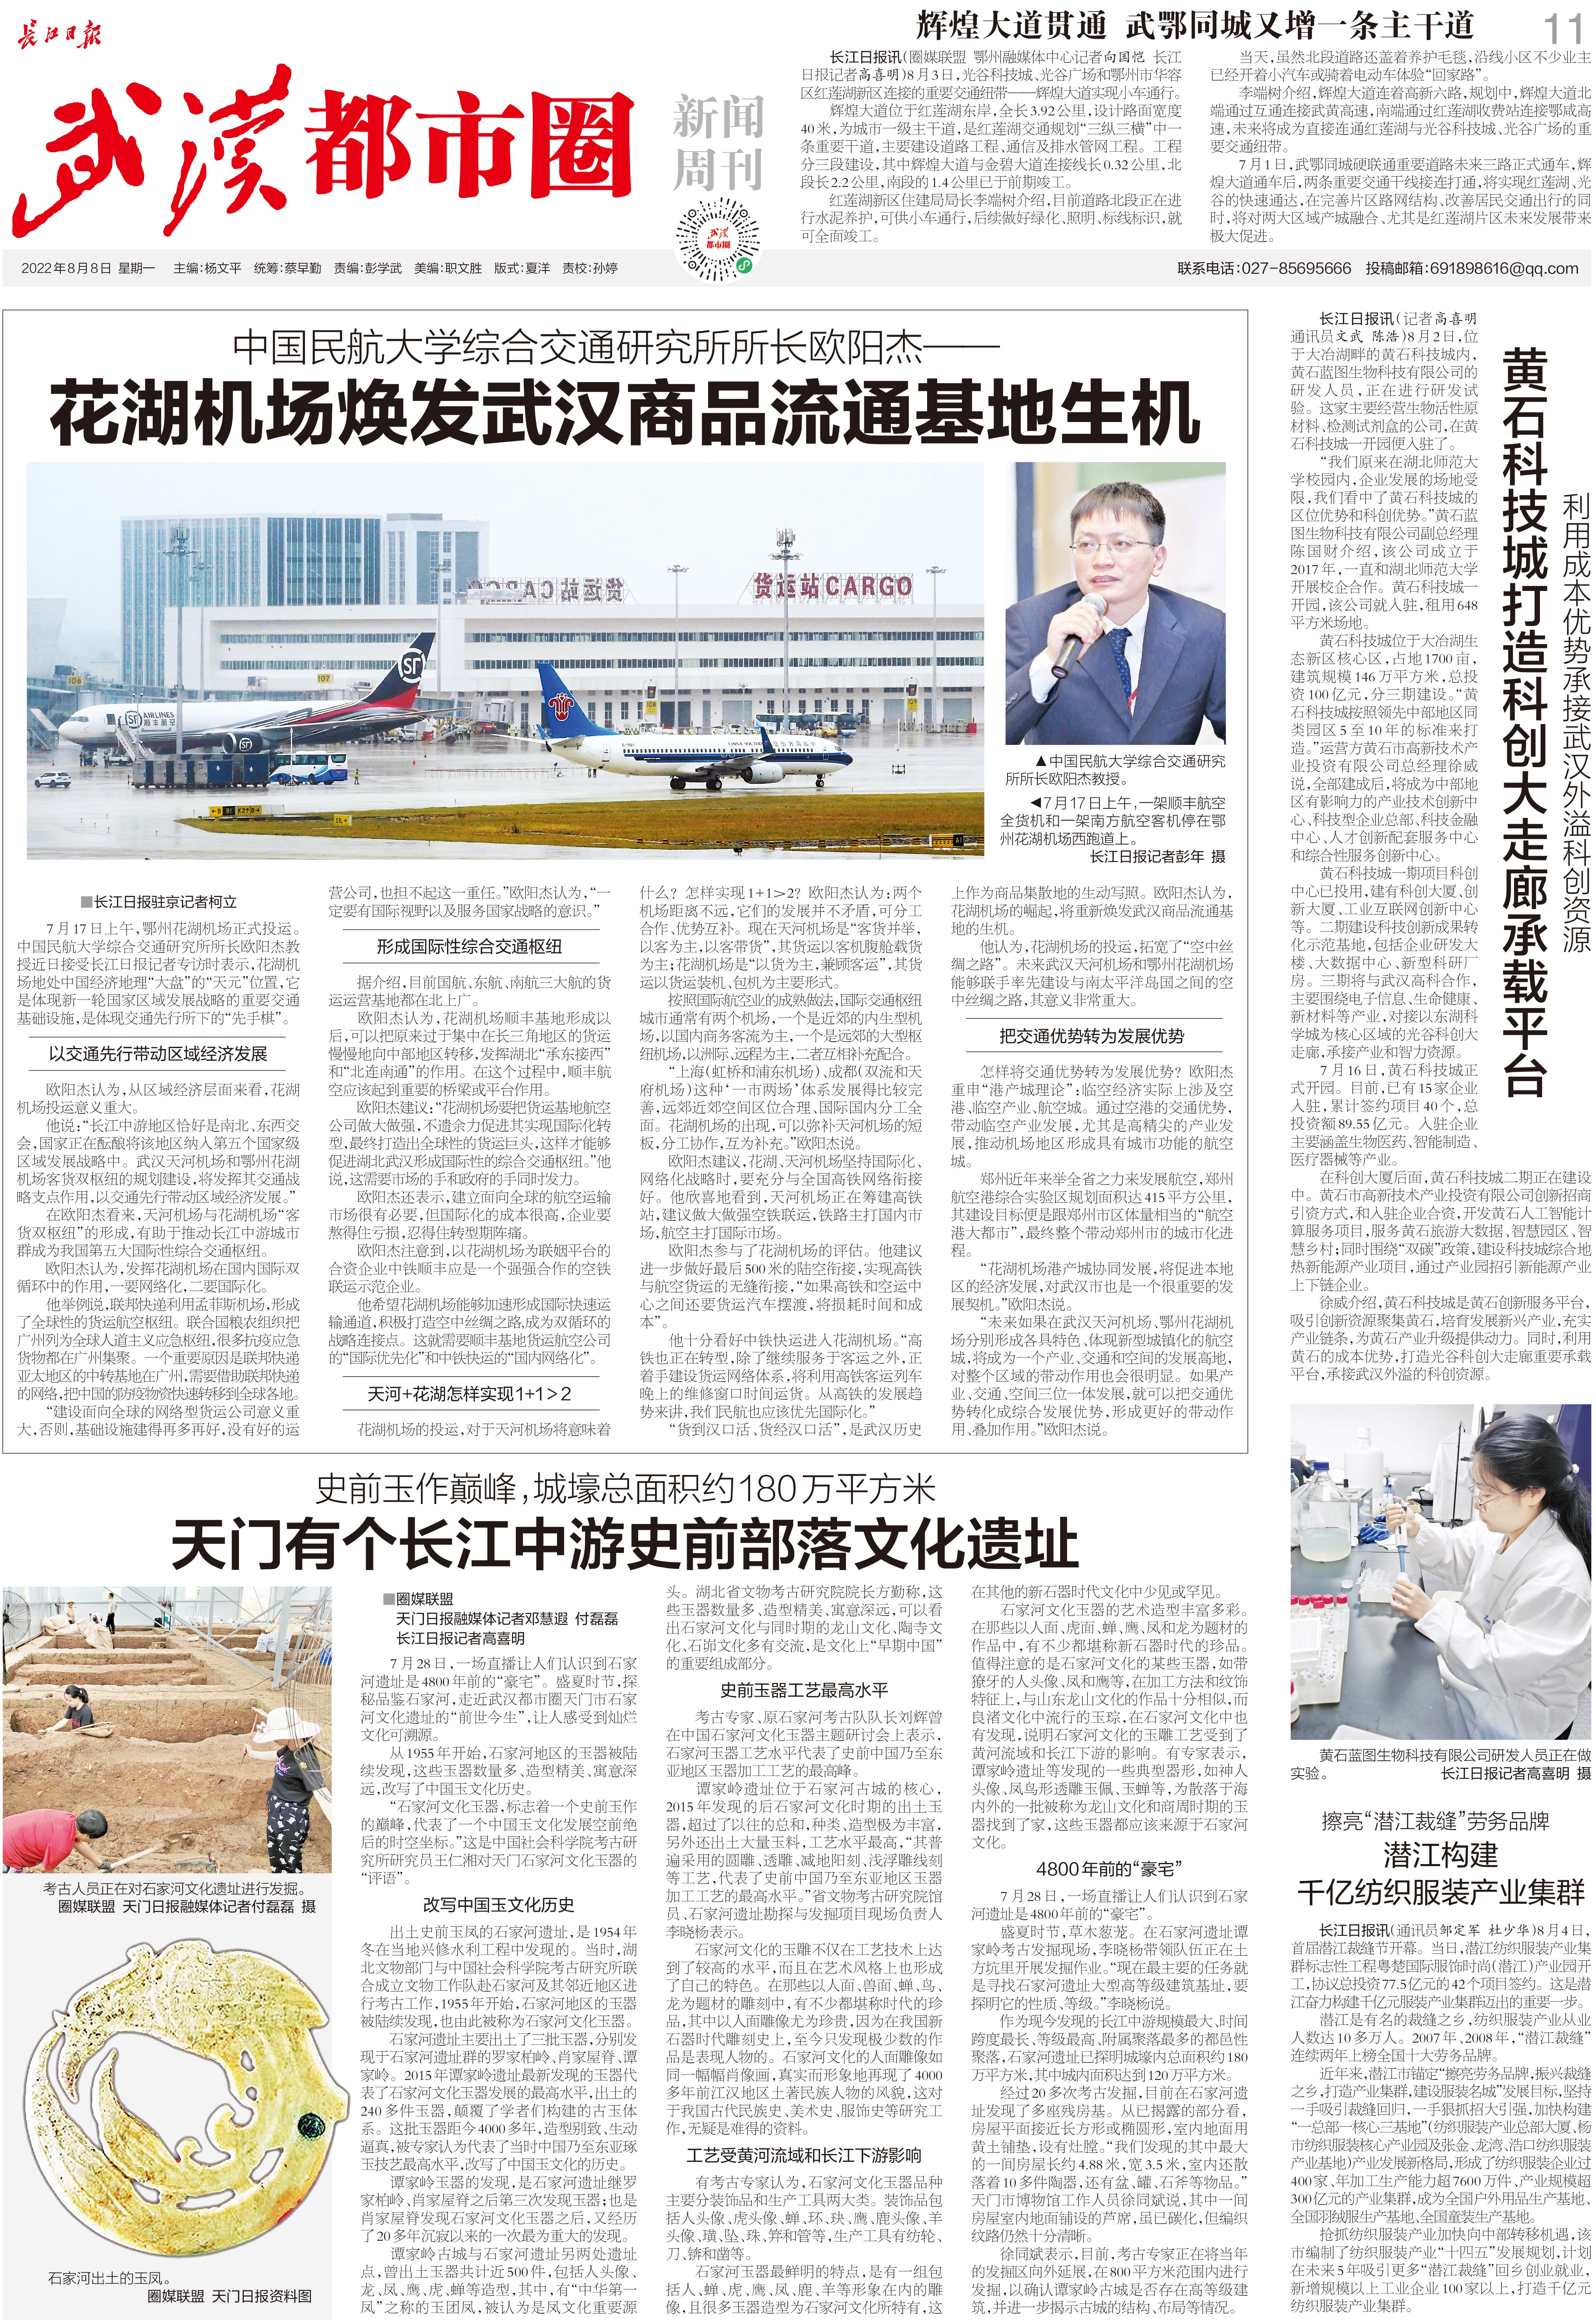 九城同心向未来长江日报武汉都市圈新闻周刊2022年8月8日第24期报纸